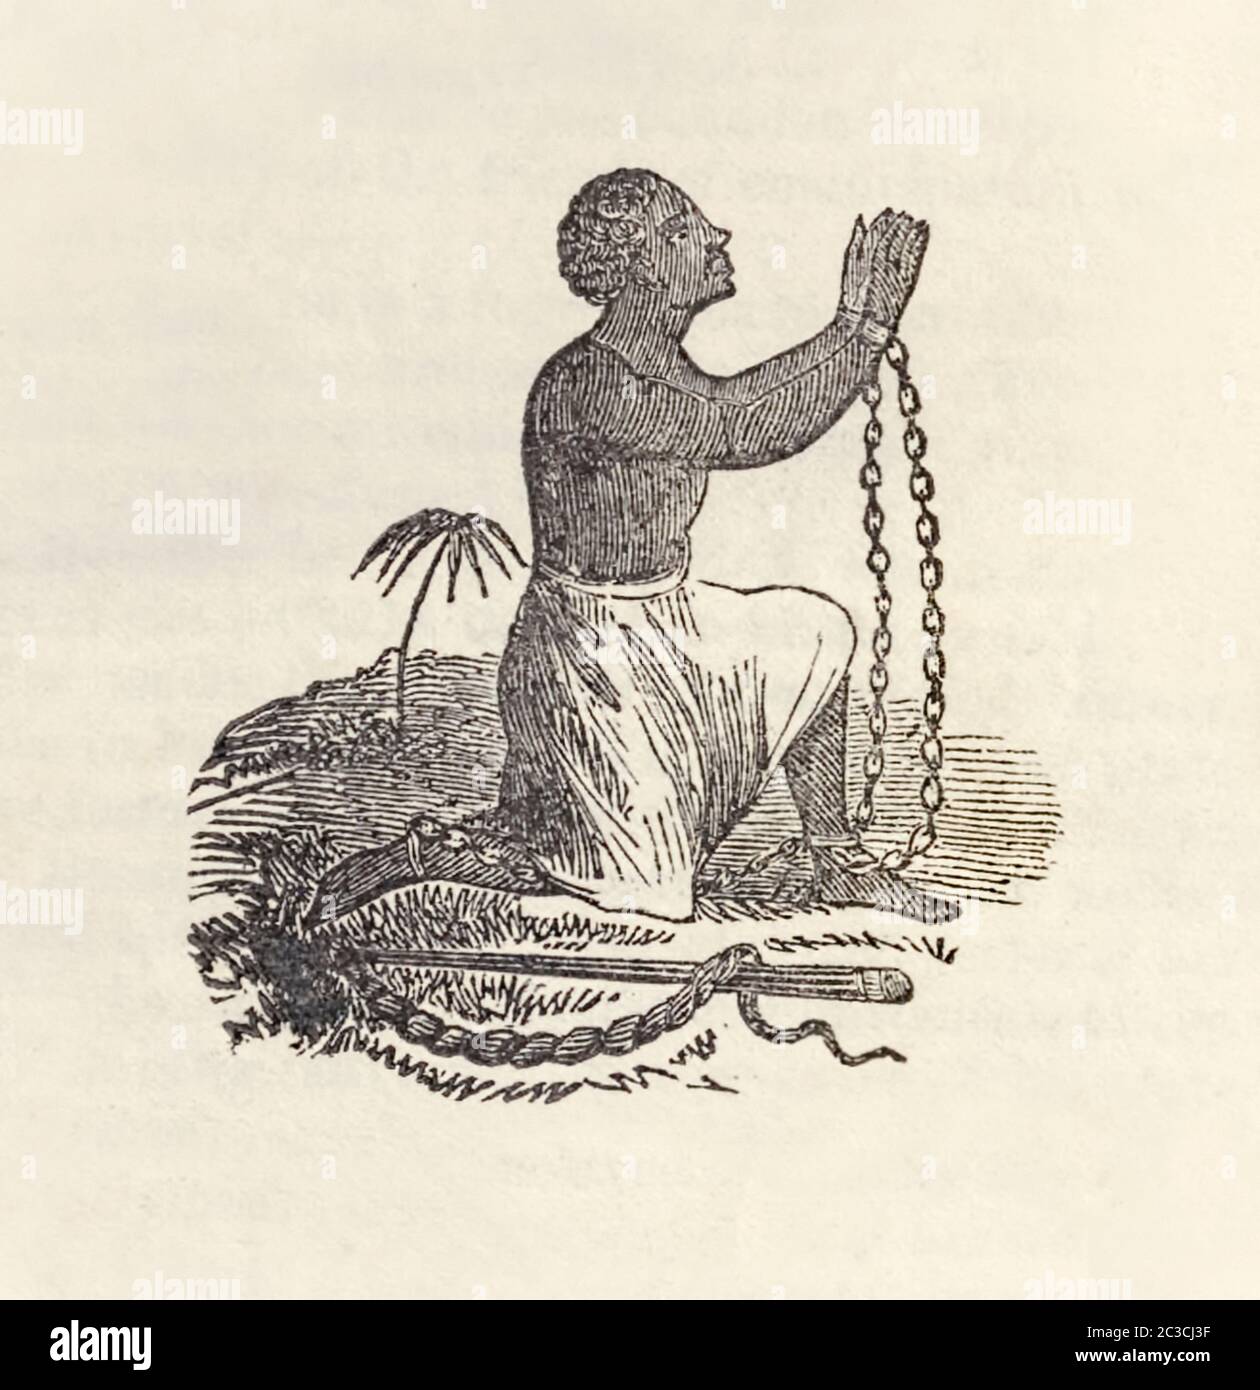 Kniendes Sklavenemblem der Anti-Sklaverei Gesellschaft, zeigt einen beherrschten afrikanischen Sklaven, der sich für die Befreiung bittet, neben ihm liegt eine Peitsche, die die untermenschliche Unterdrückung symbolisiert, die Sklaven ertragen mussten. Illustration aus ‘die Erzählung von William W. Brown, einem Fugitiven Sklave, von ihm selbst geschrieben’ von William Wells Brown (ca. 1814-1884). Stockfoto